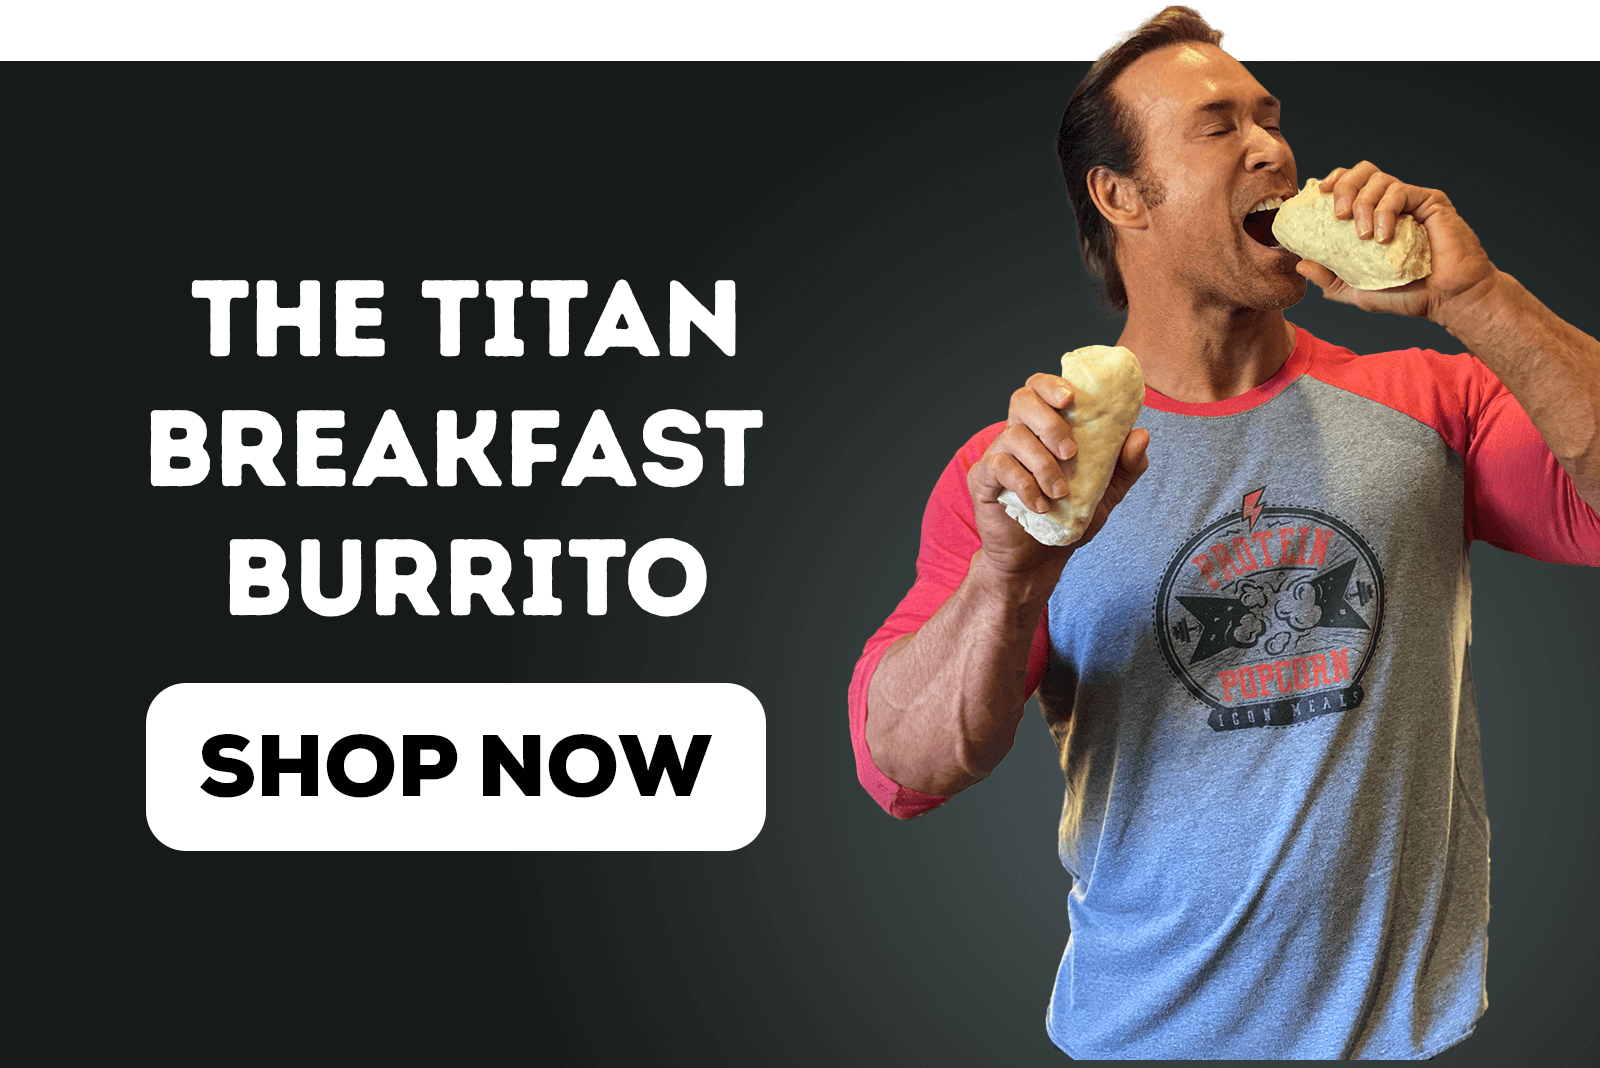 The Titan Breakfast Burrito